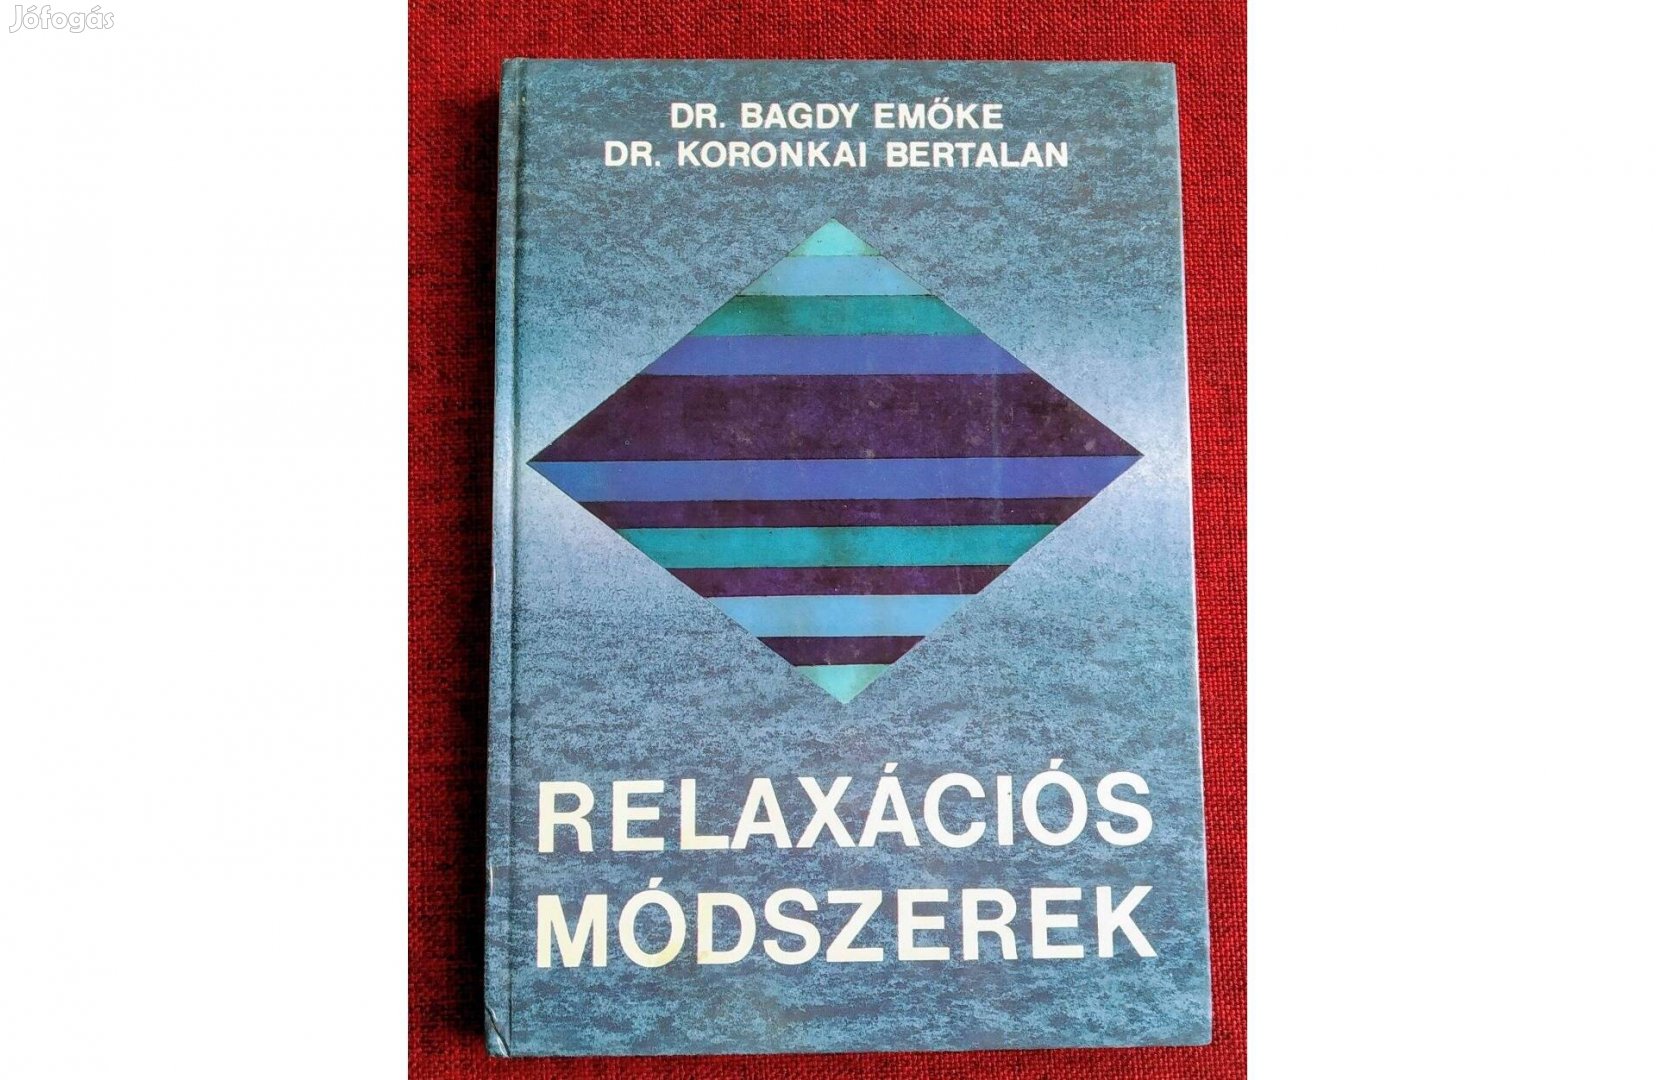 Relaxációs módszerek Dr. Bagdy Emőke Koronkai Bertalan dr